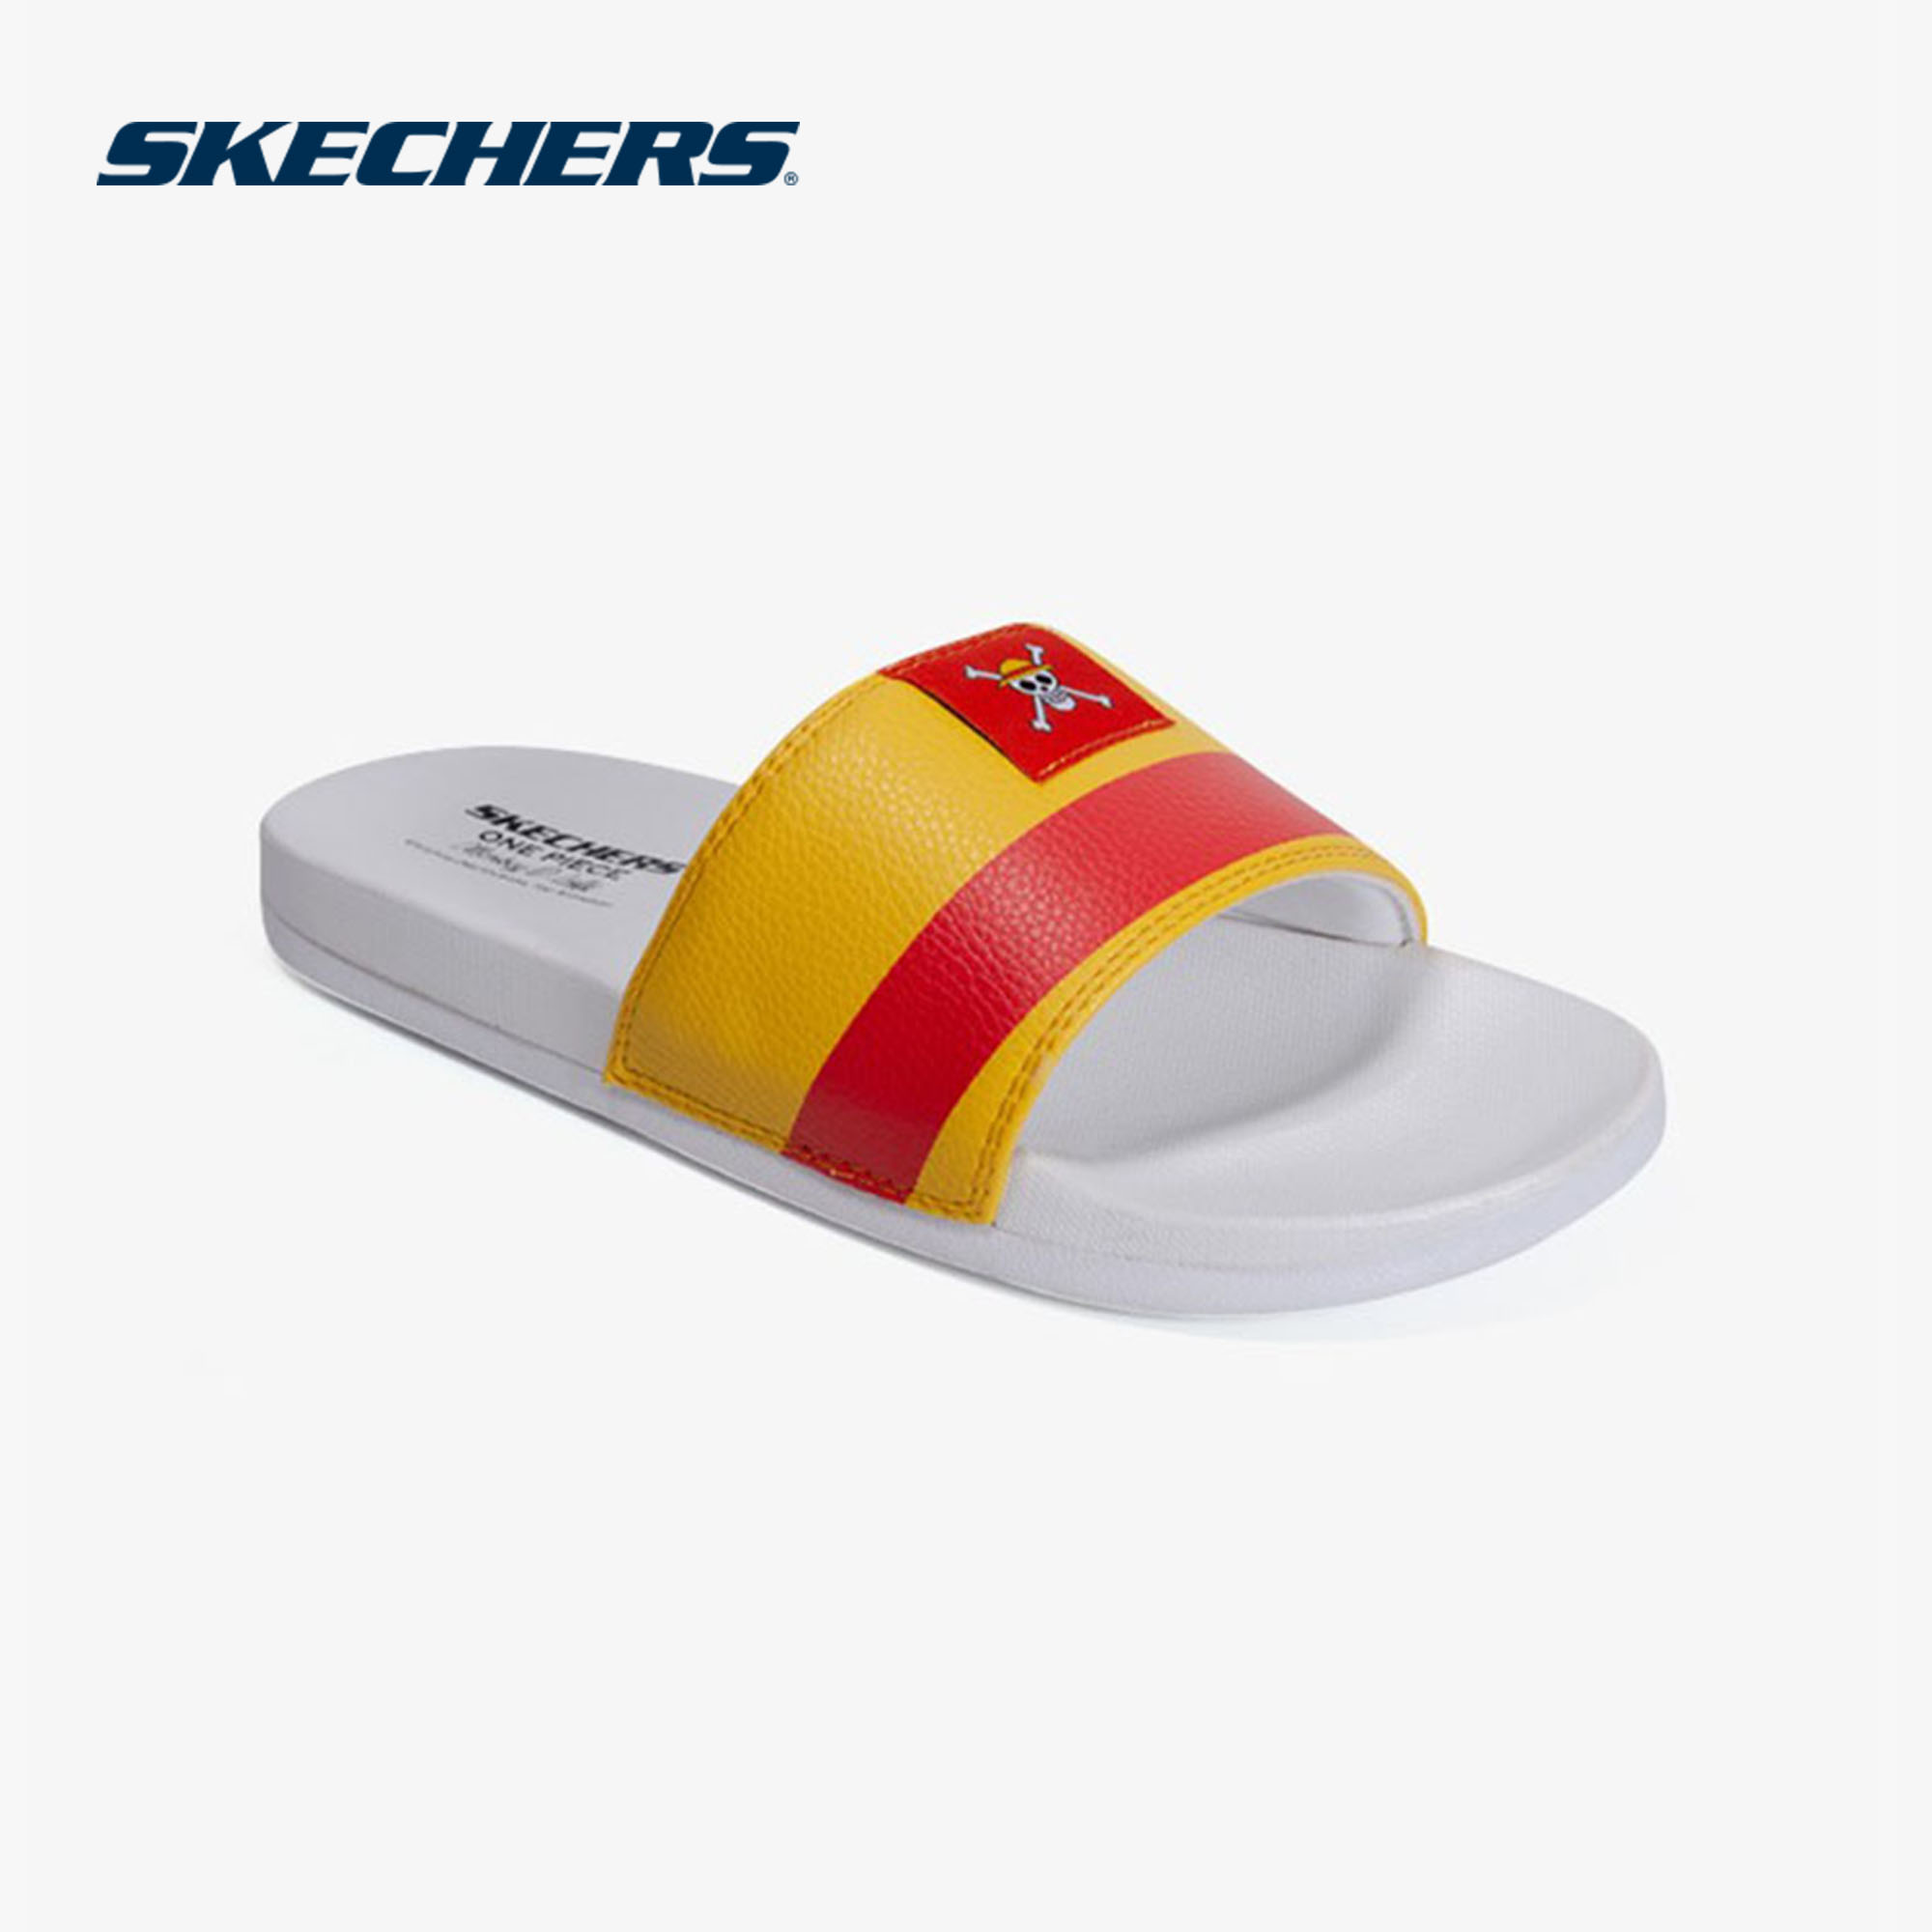 skechers one piece sandal